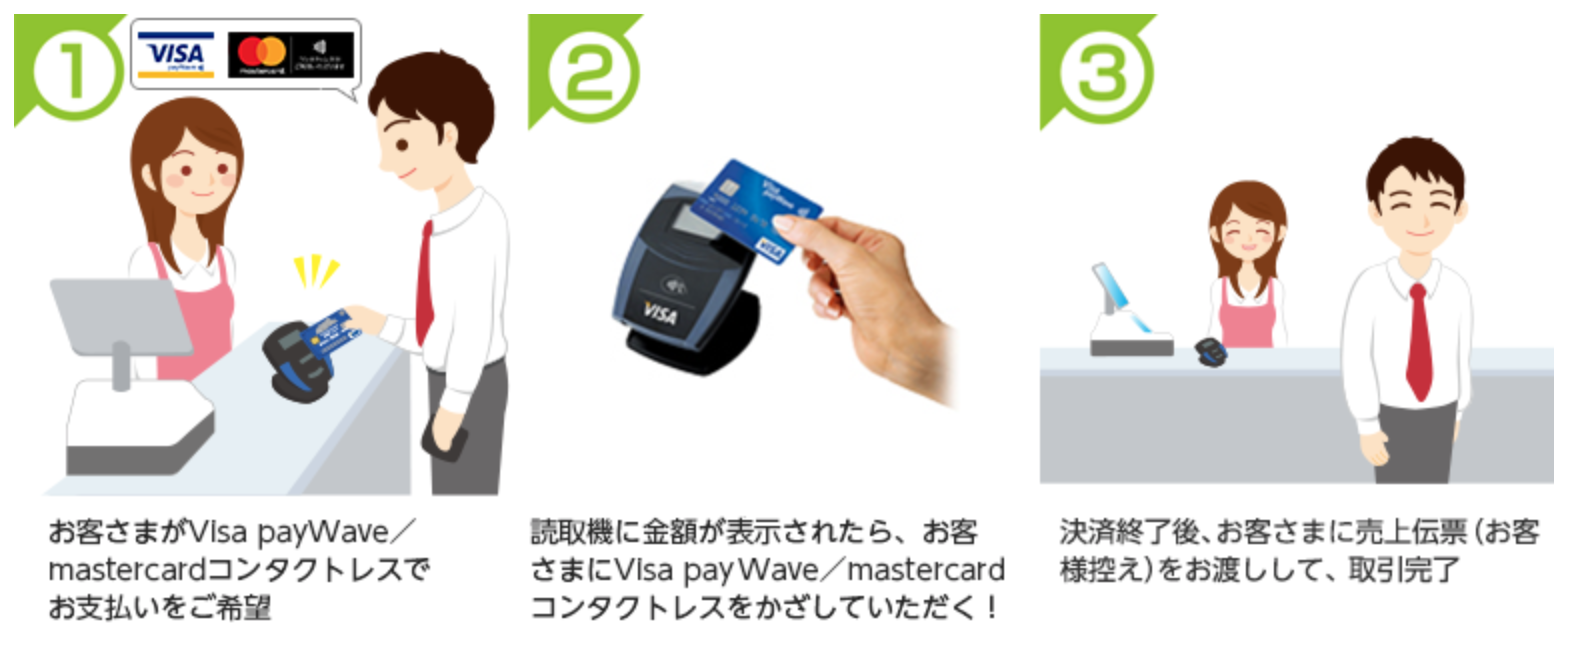 三井住友カードの新カードに搭載されるVisa payWave／mastercardコンタクトレス